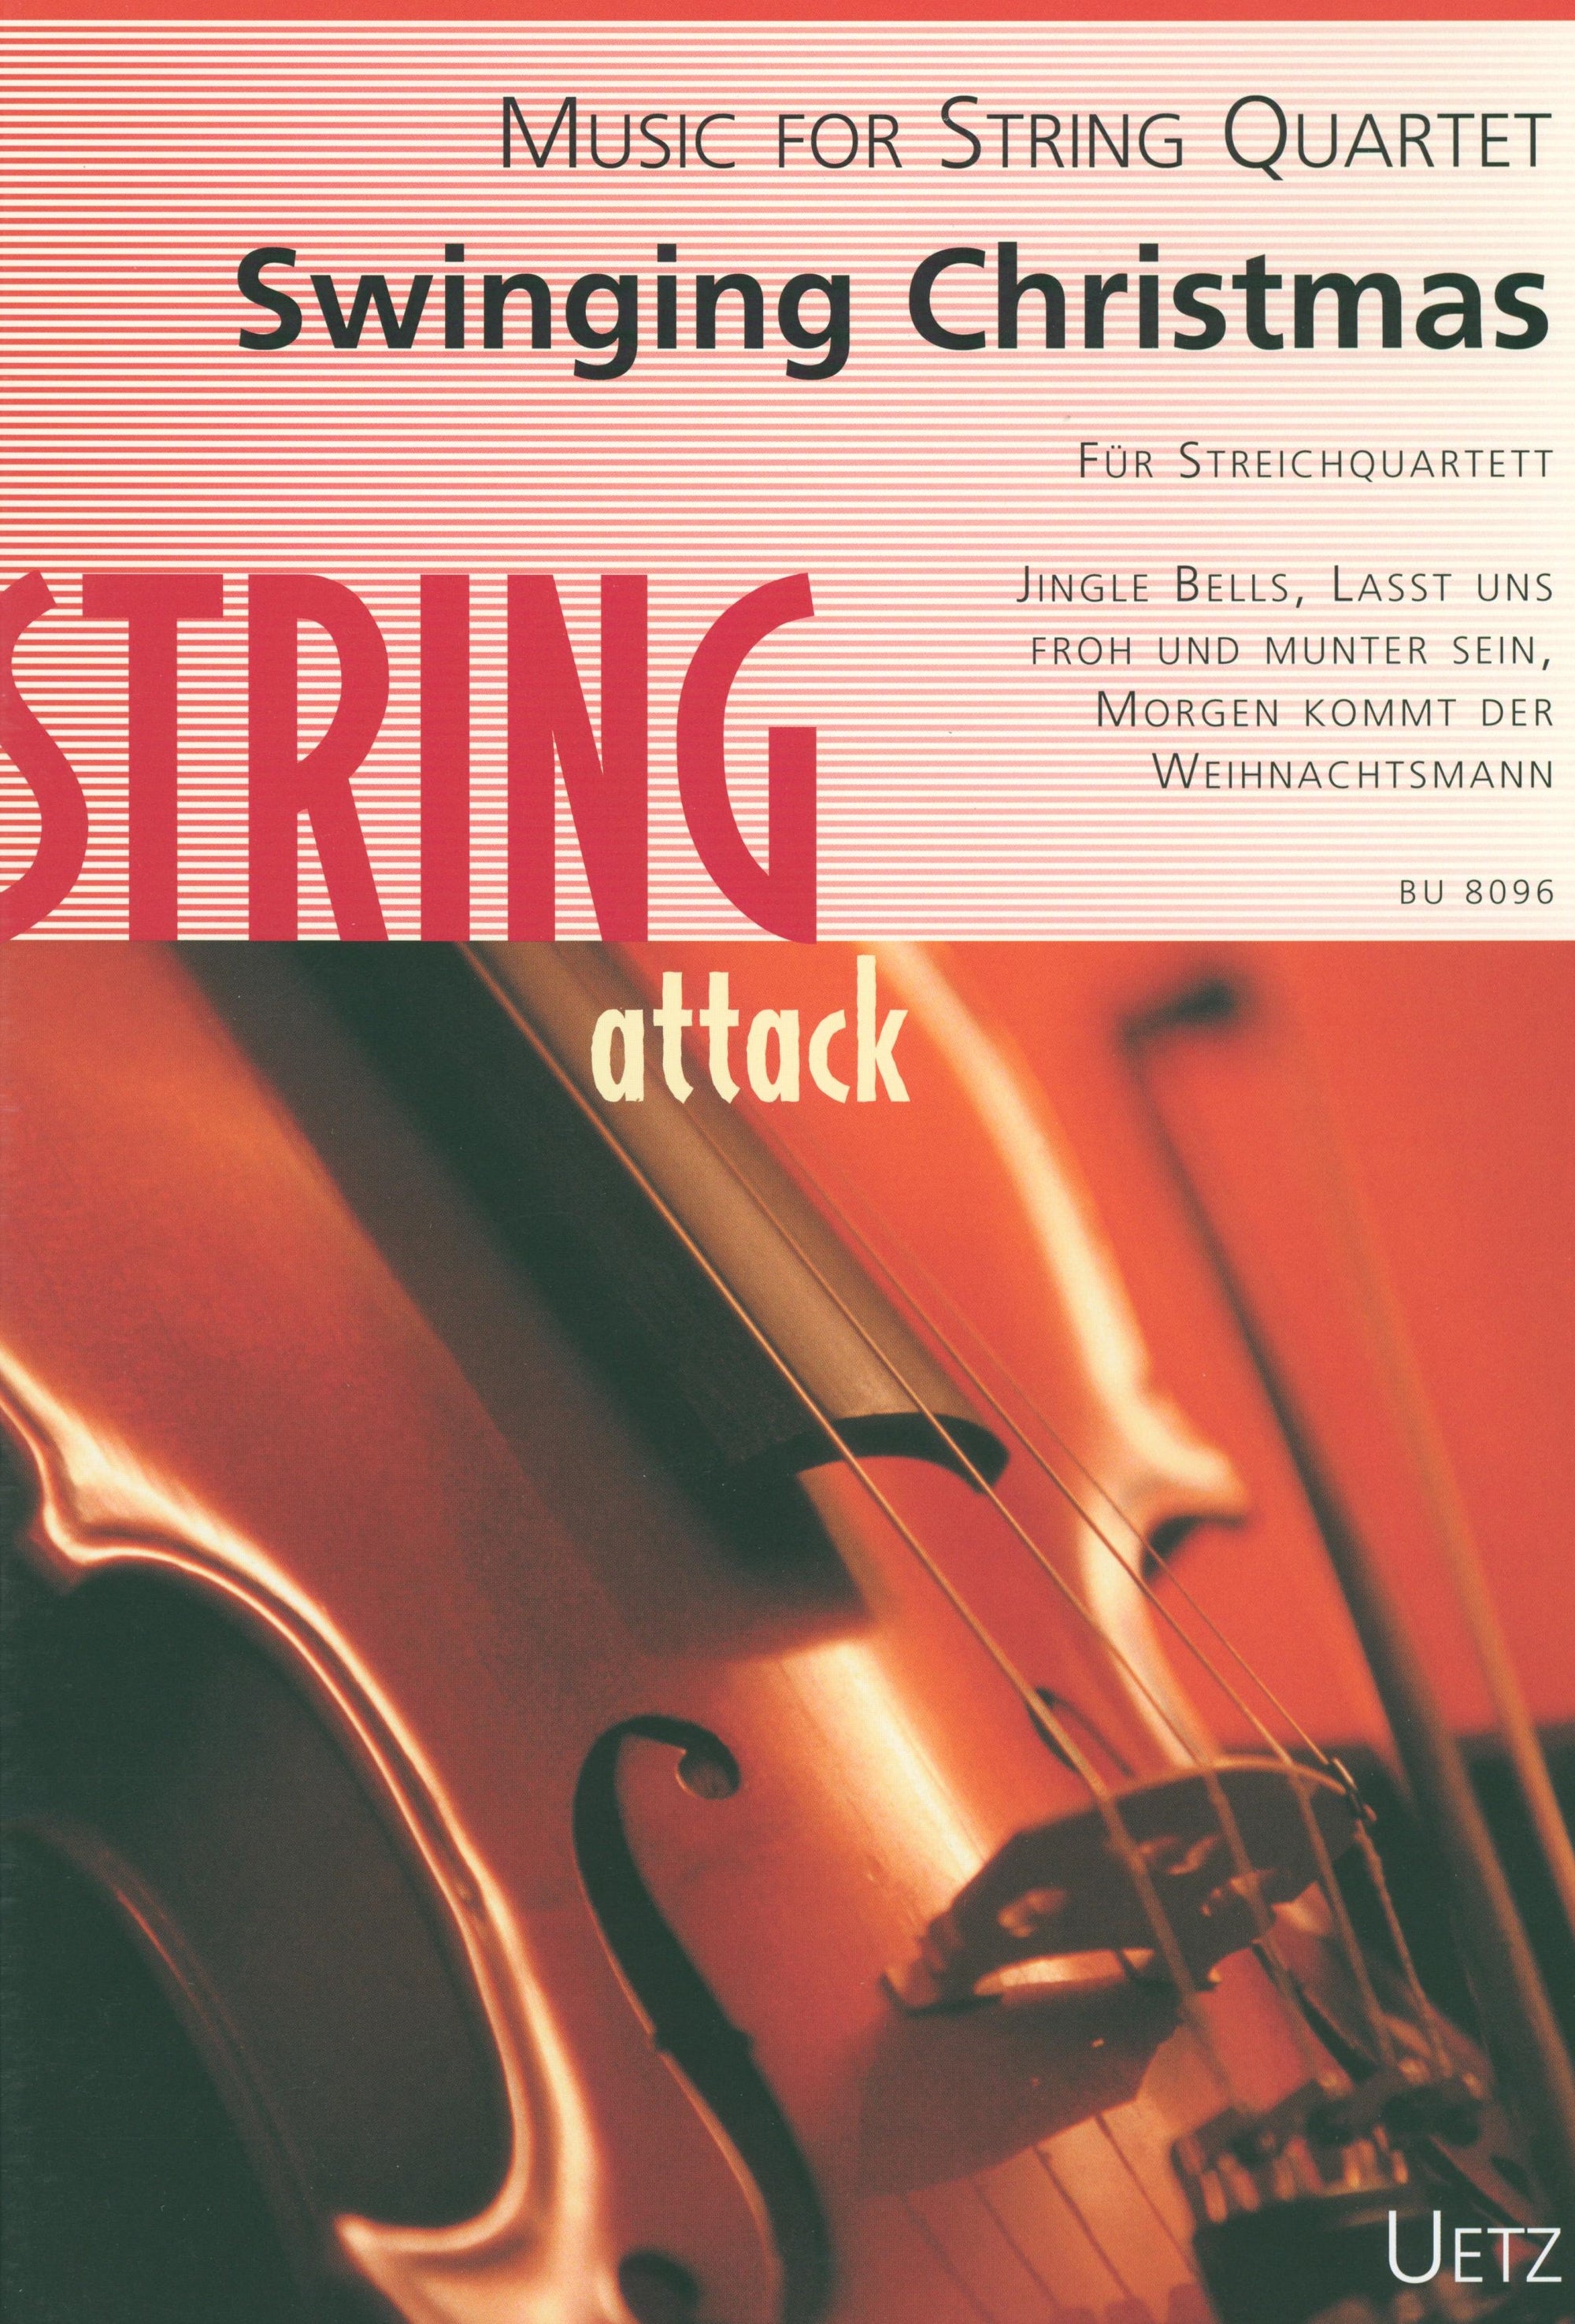 Swinging Christmas for String Quartet